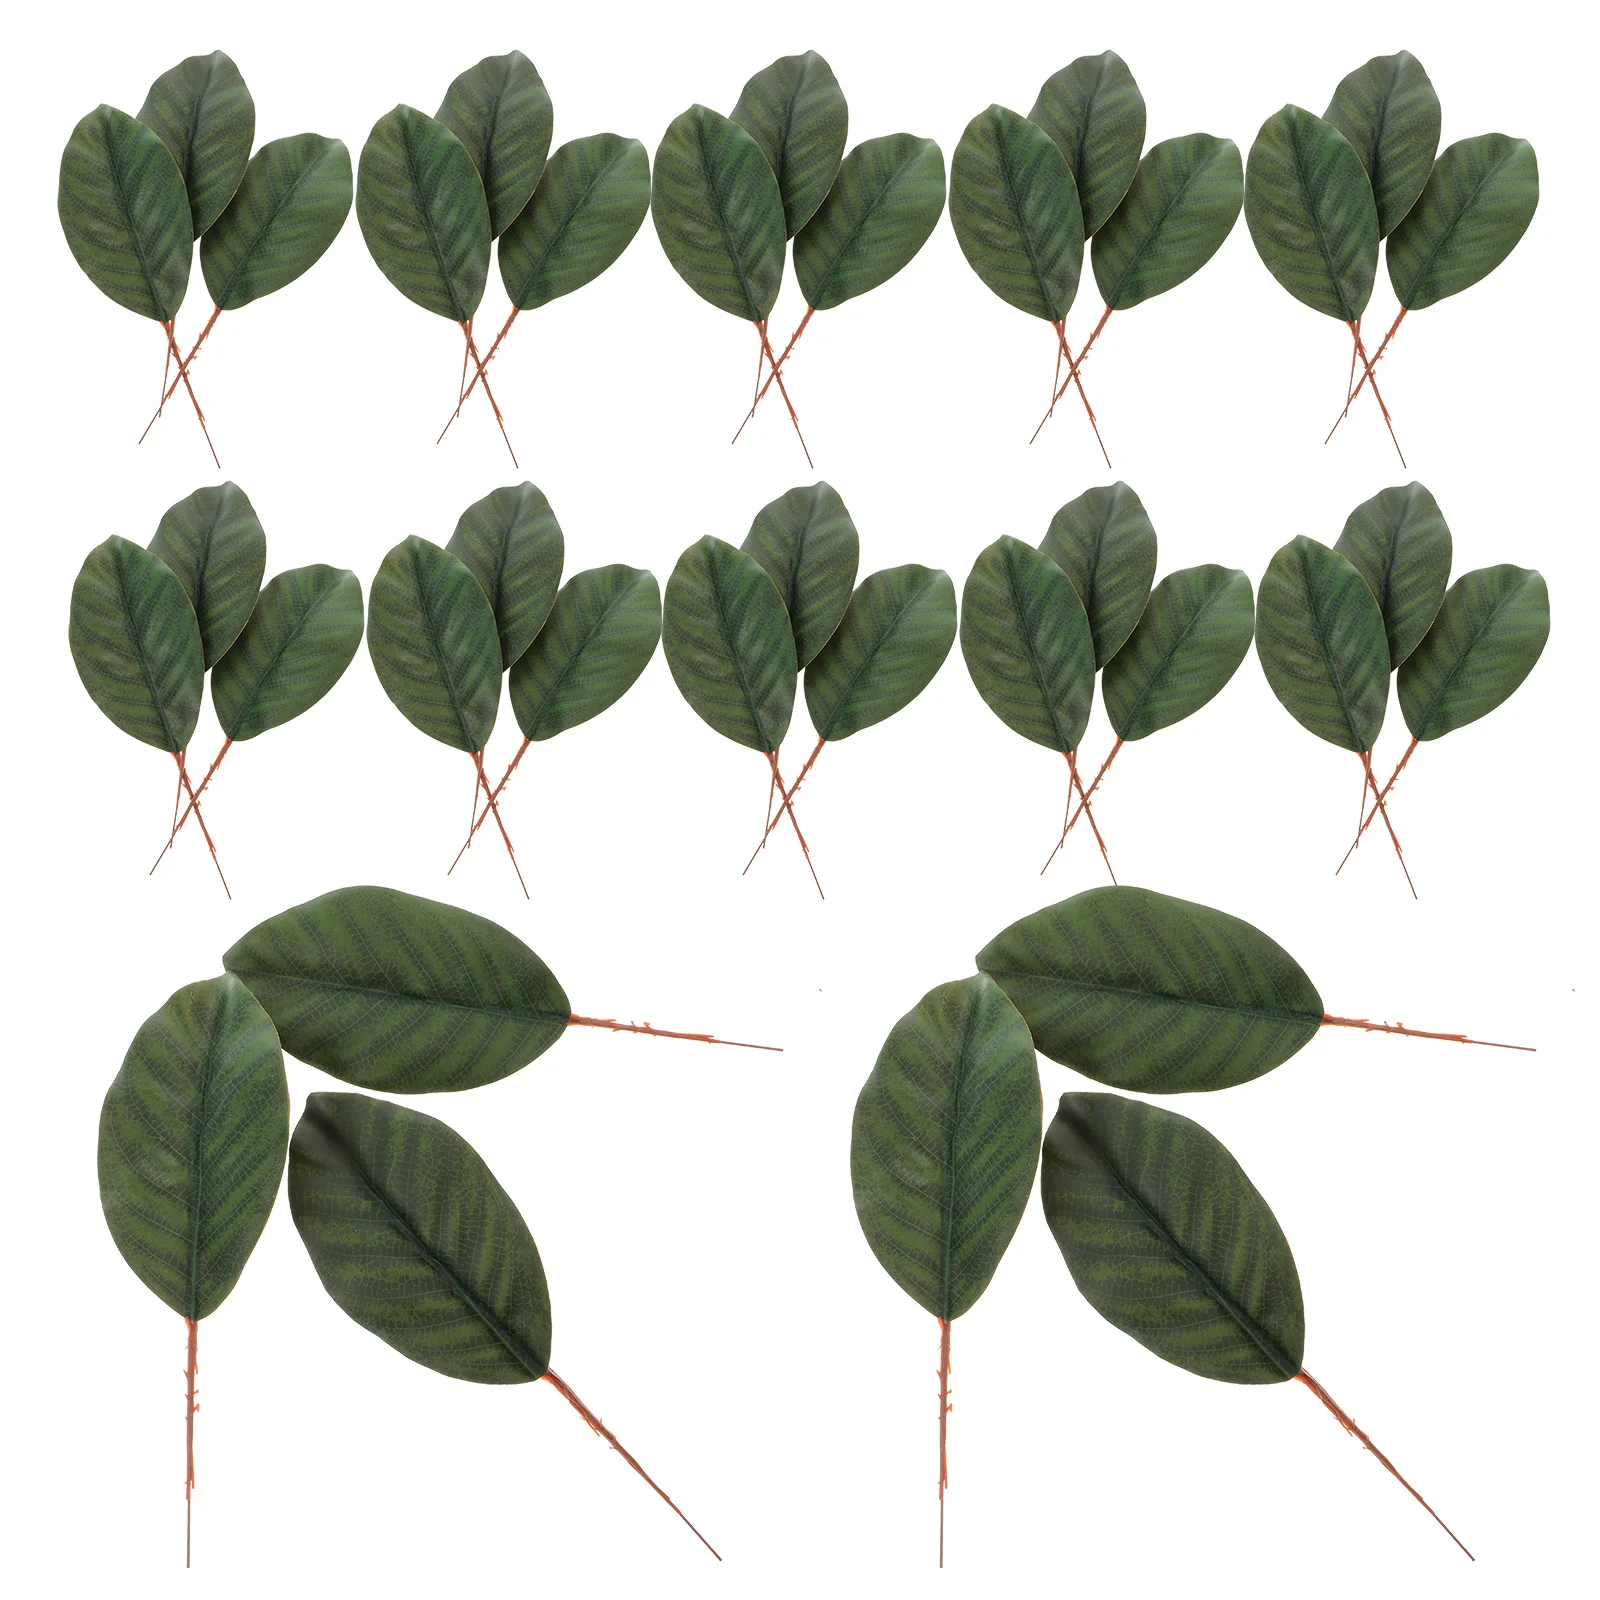 

30 Pcs Artificial Magnolia Leaves Green Plant Crafts Fake Leaf Decor Faux Decorative Bouquet